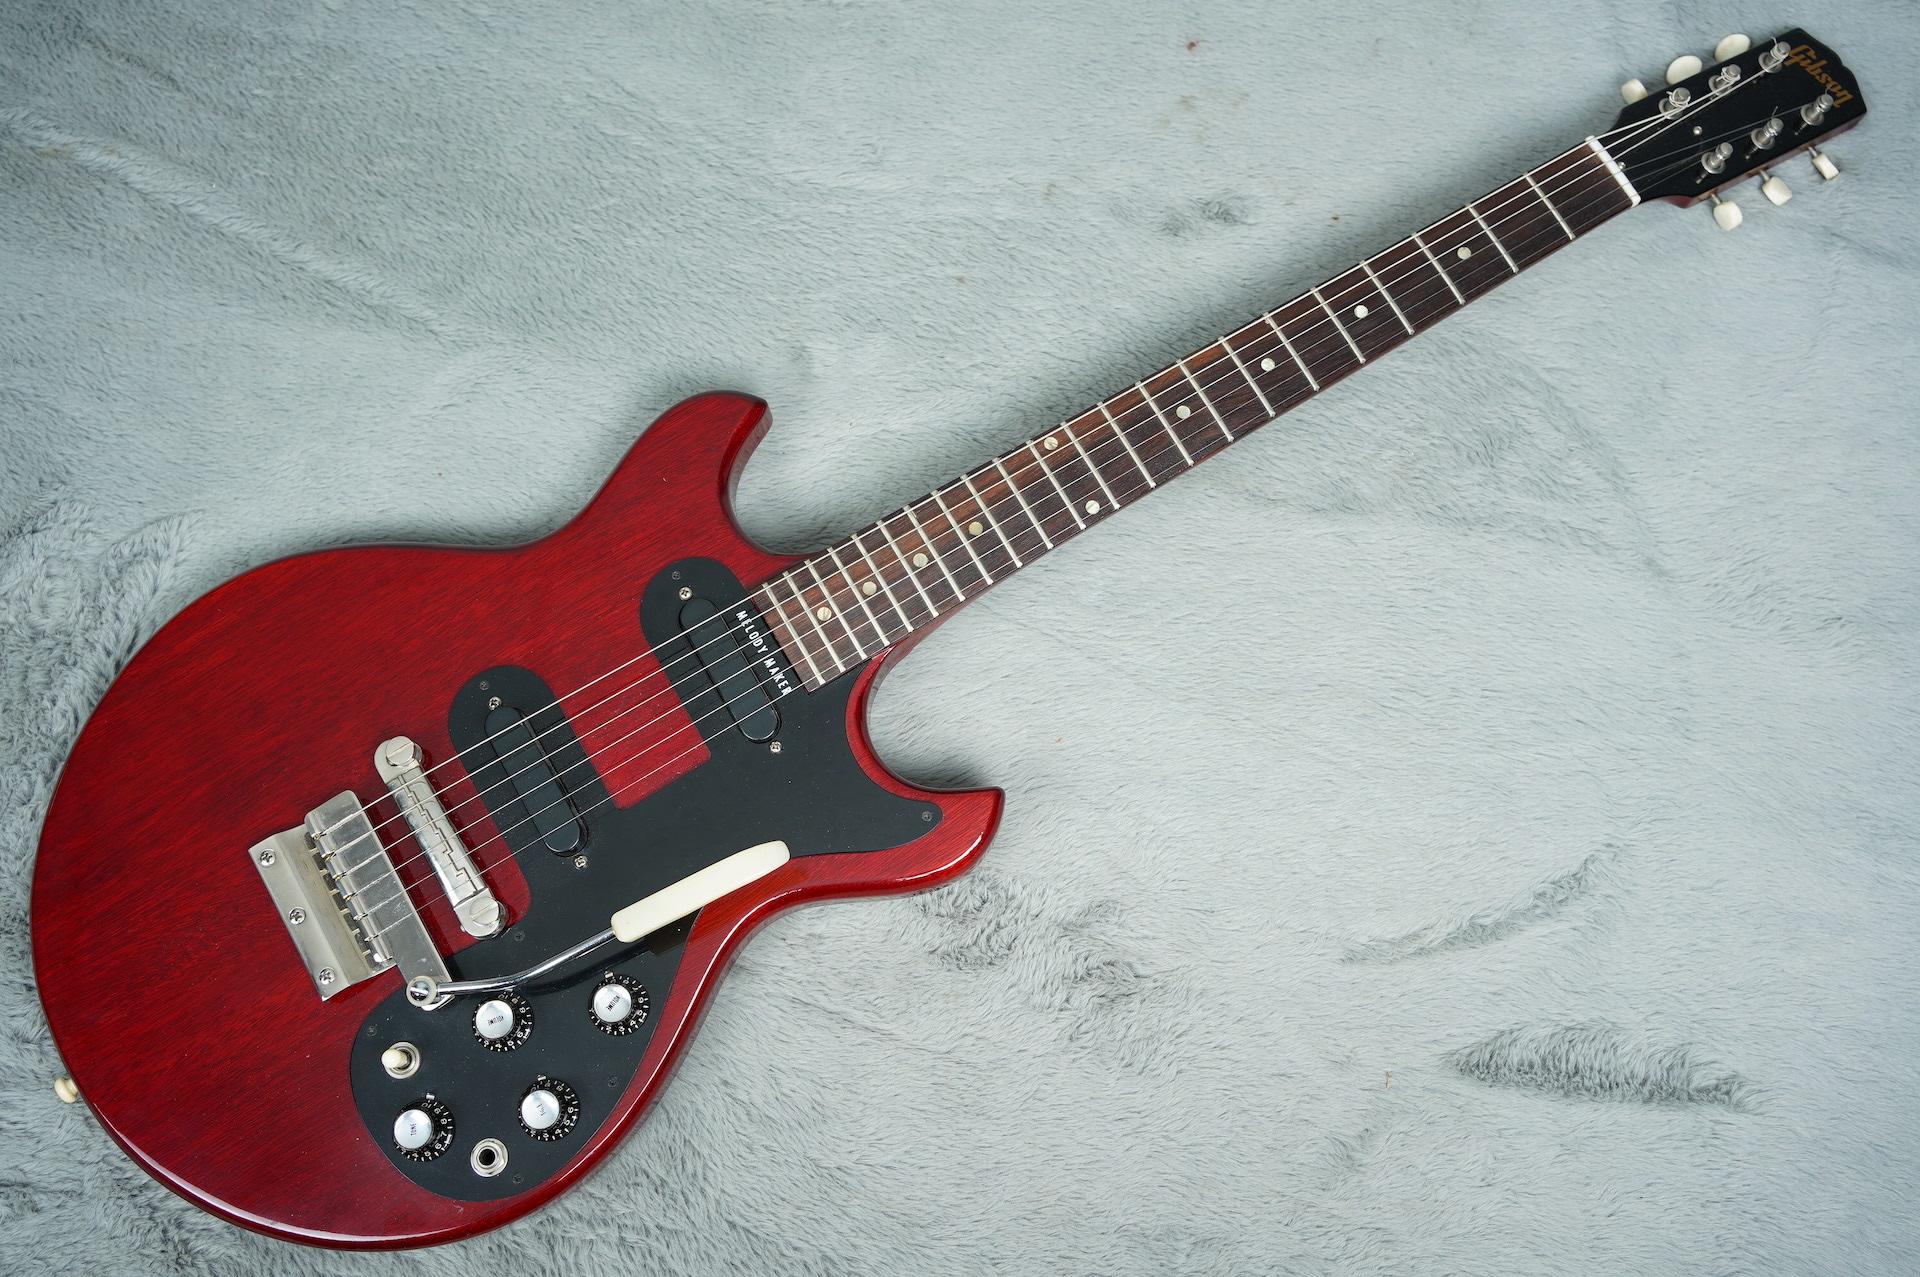 1965 Gibson Melody Maker + OSSC Near MINT!